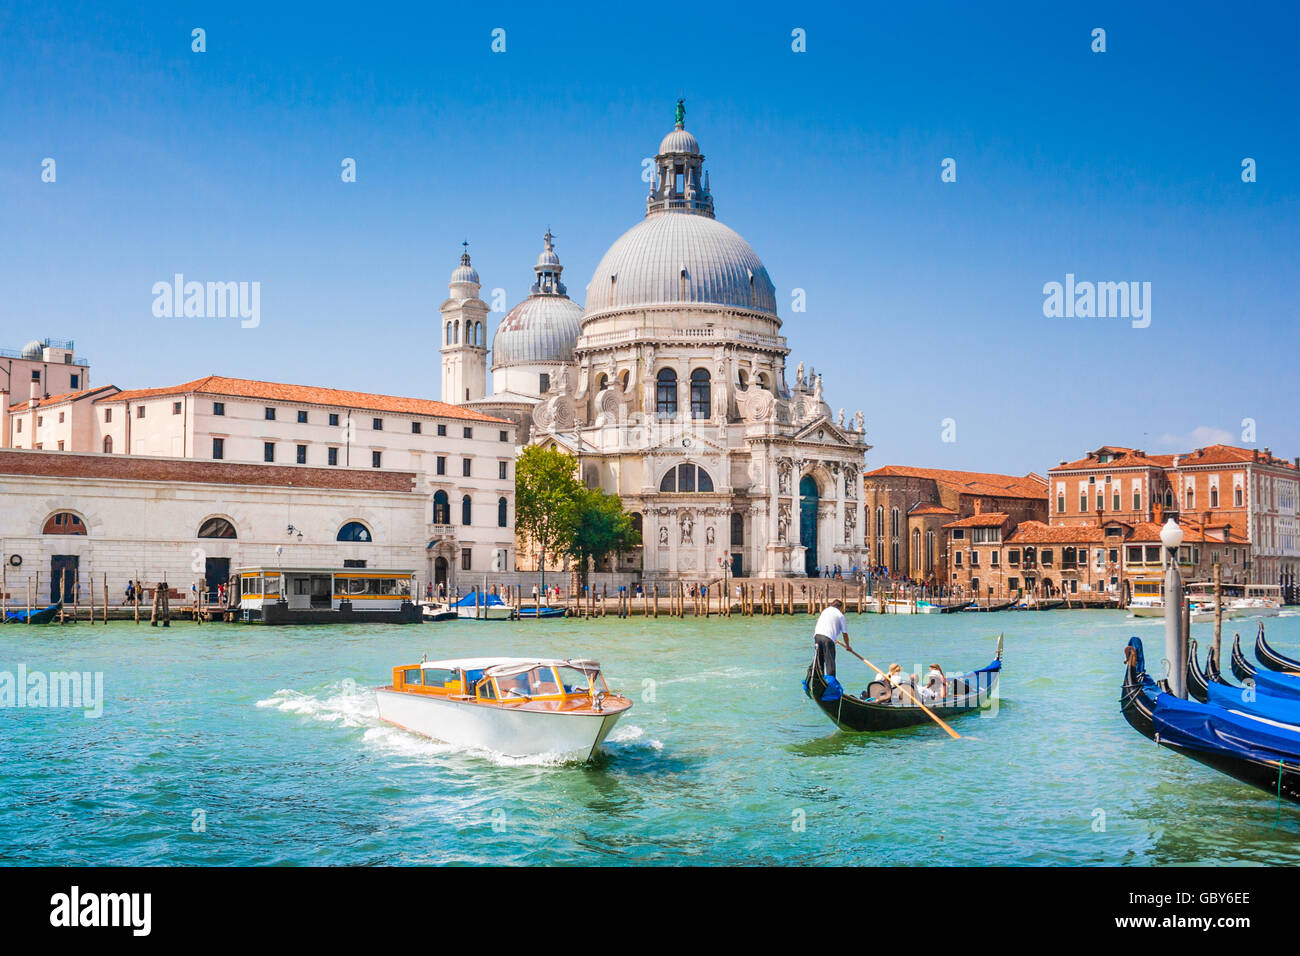 Gondole traditionnelle et bateau sur Canal Grande avec Basilique historique di Santa Maria della Salute en arrière-plan, Venise, Italie Banque D'Images